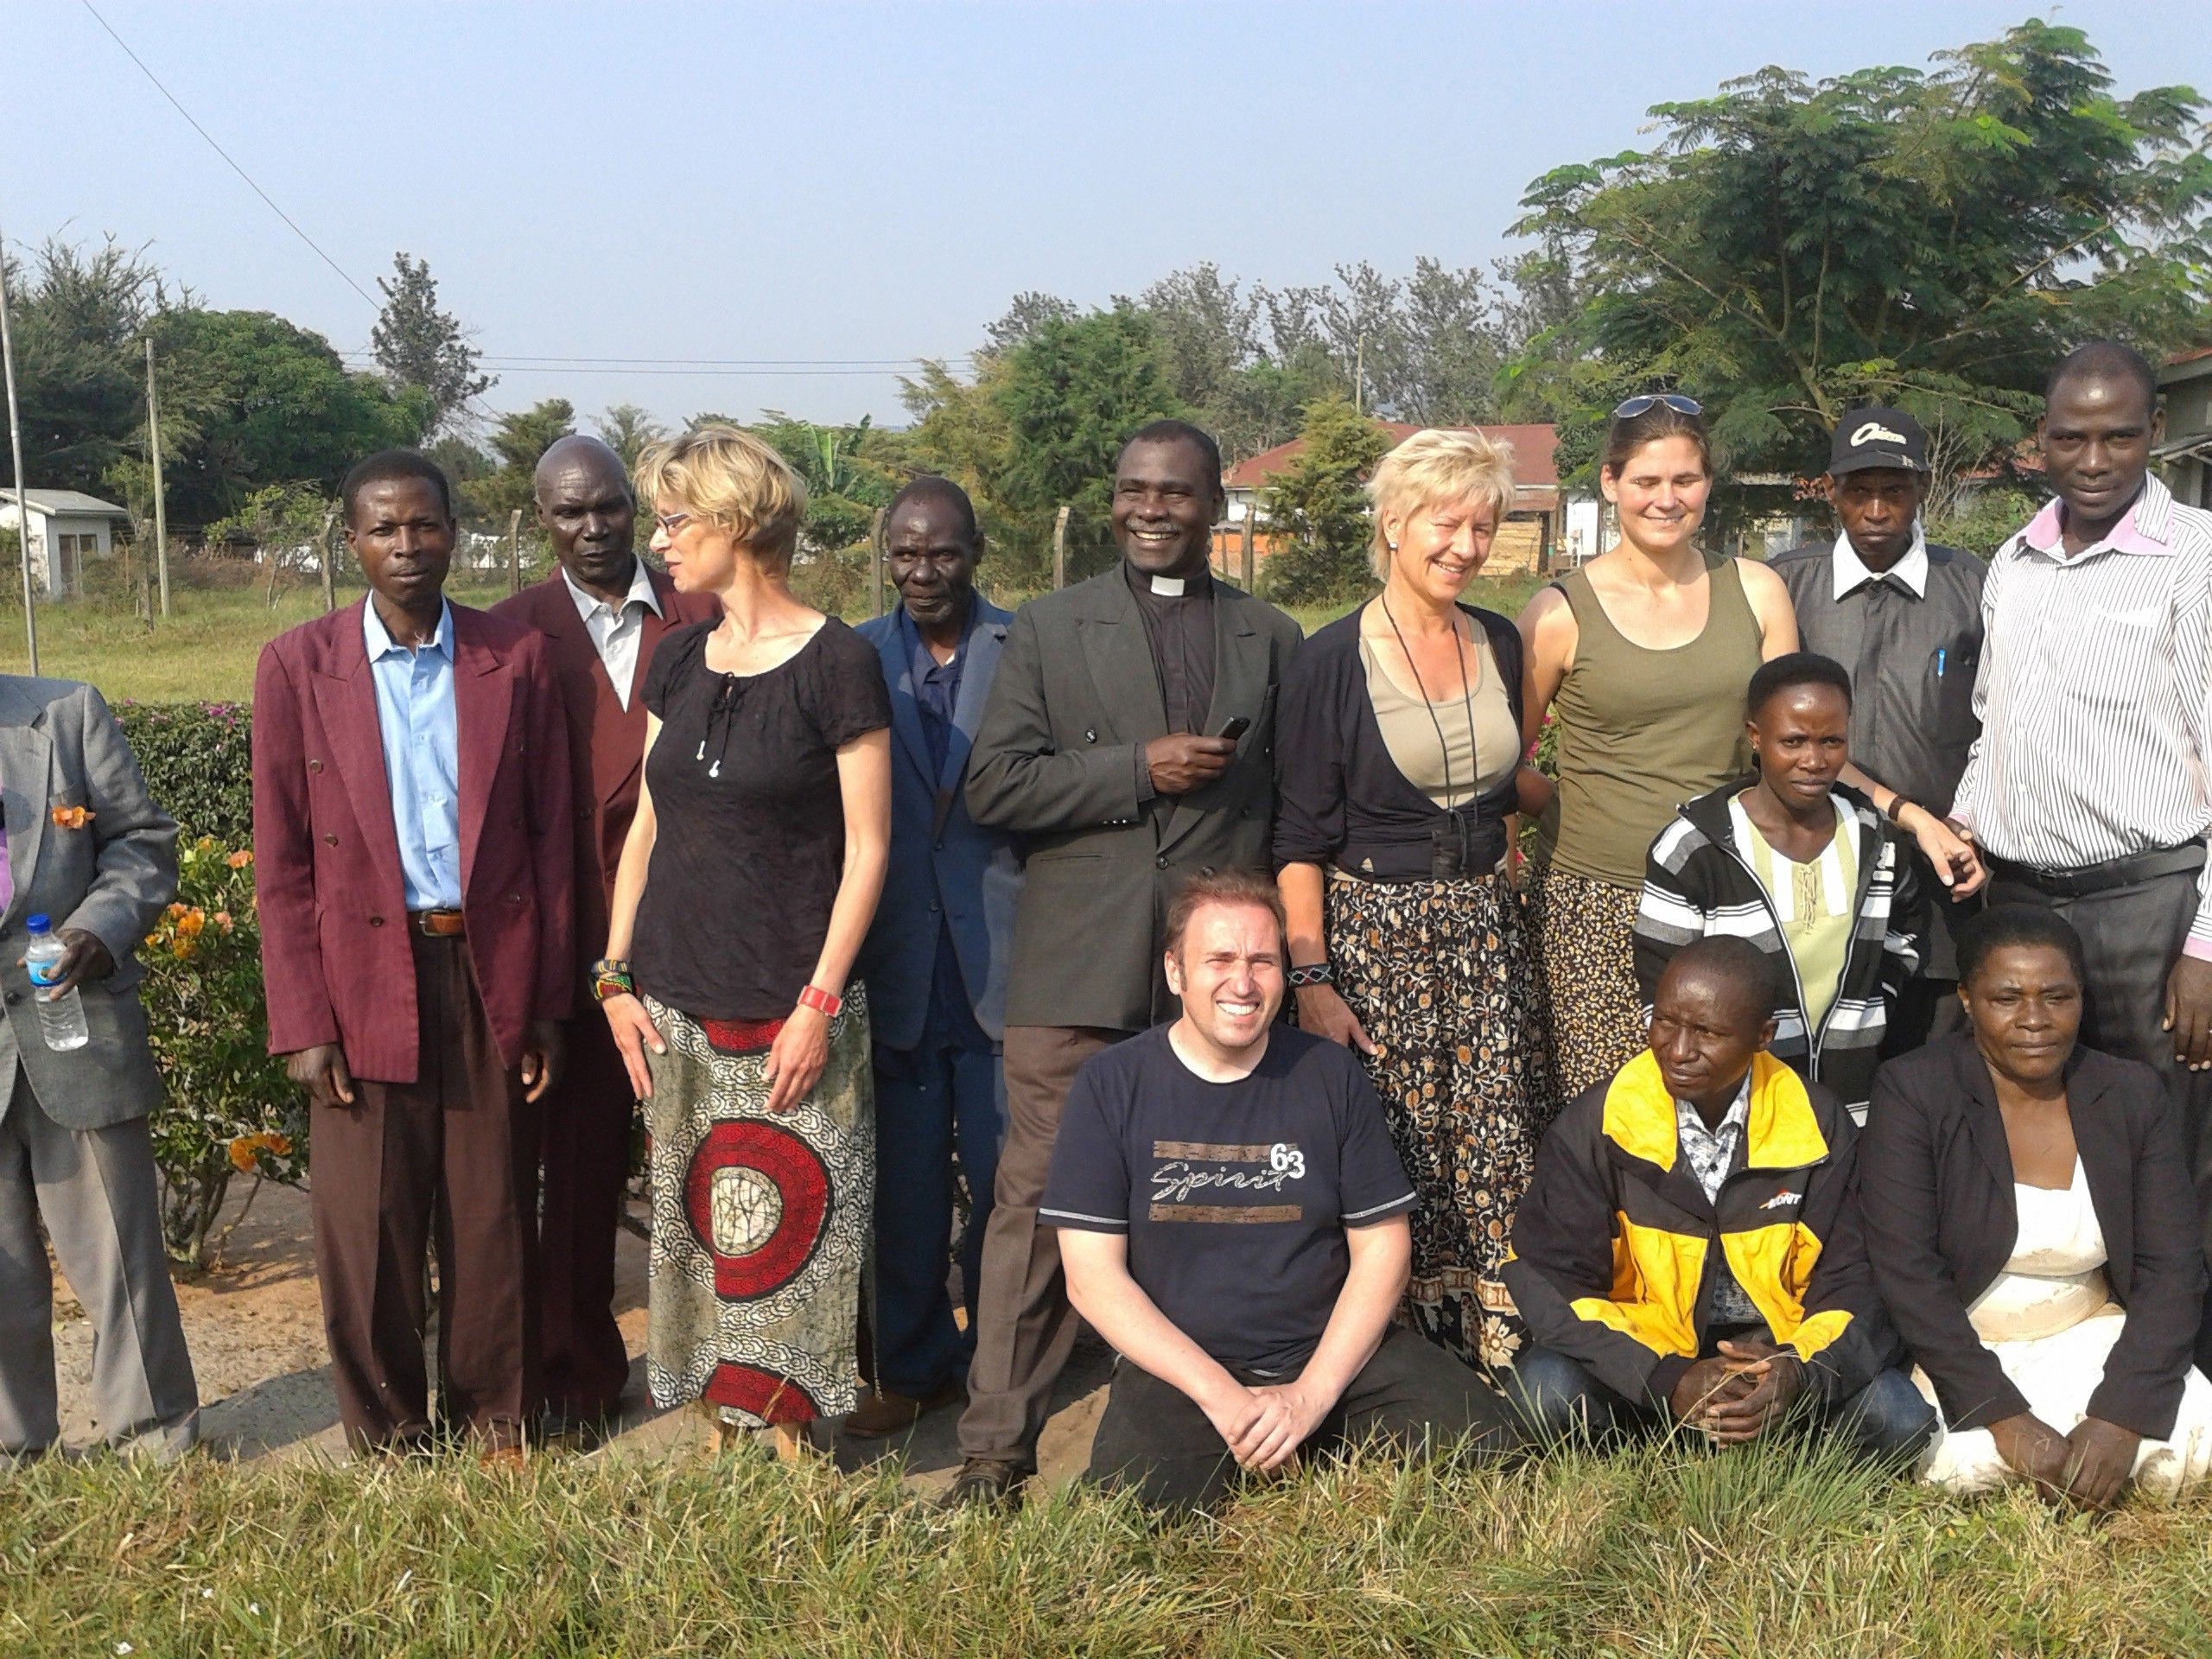 Besuch aus Bwagura! Karibu! 2009 war zum letzten Mal eine Delegation unserer Partnergemeinde aus Tansania zu Besuch bei uns in Kettwig.